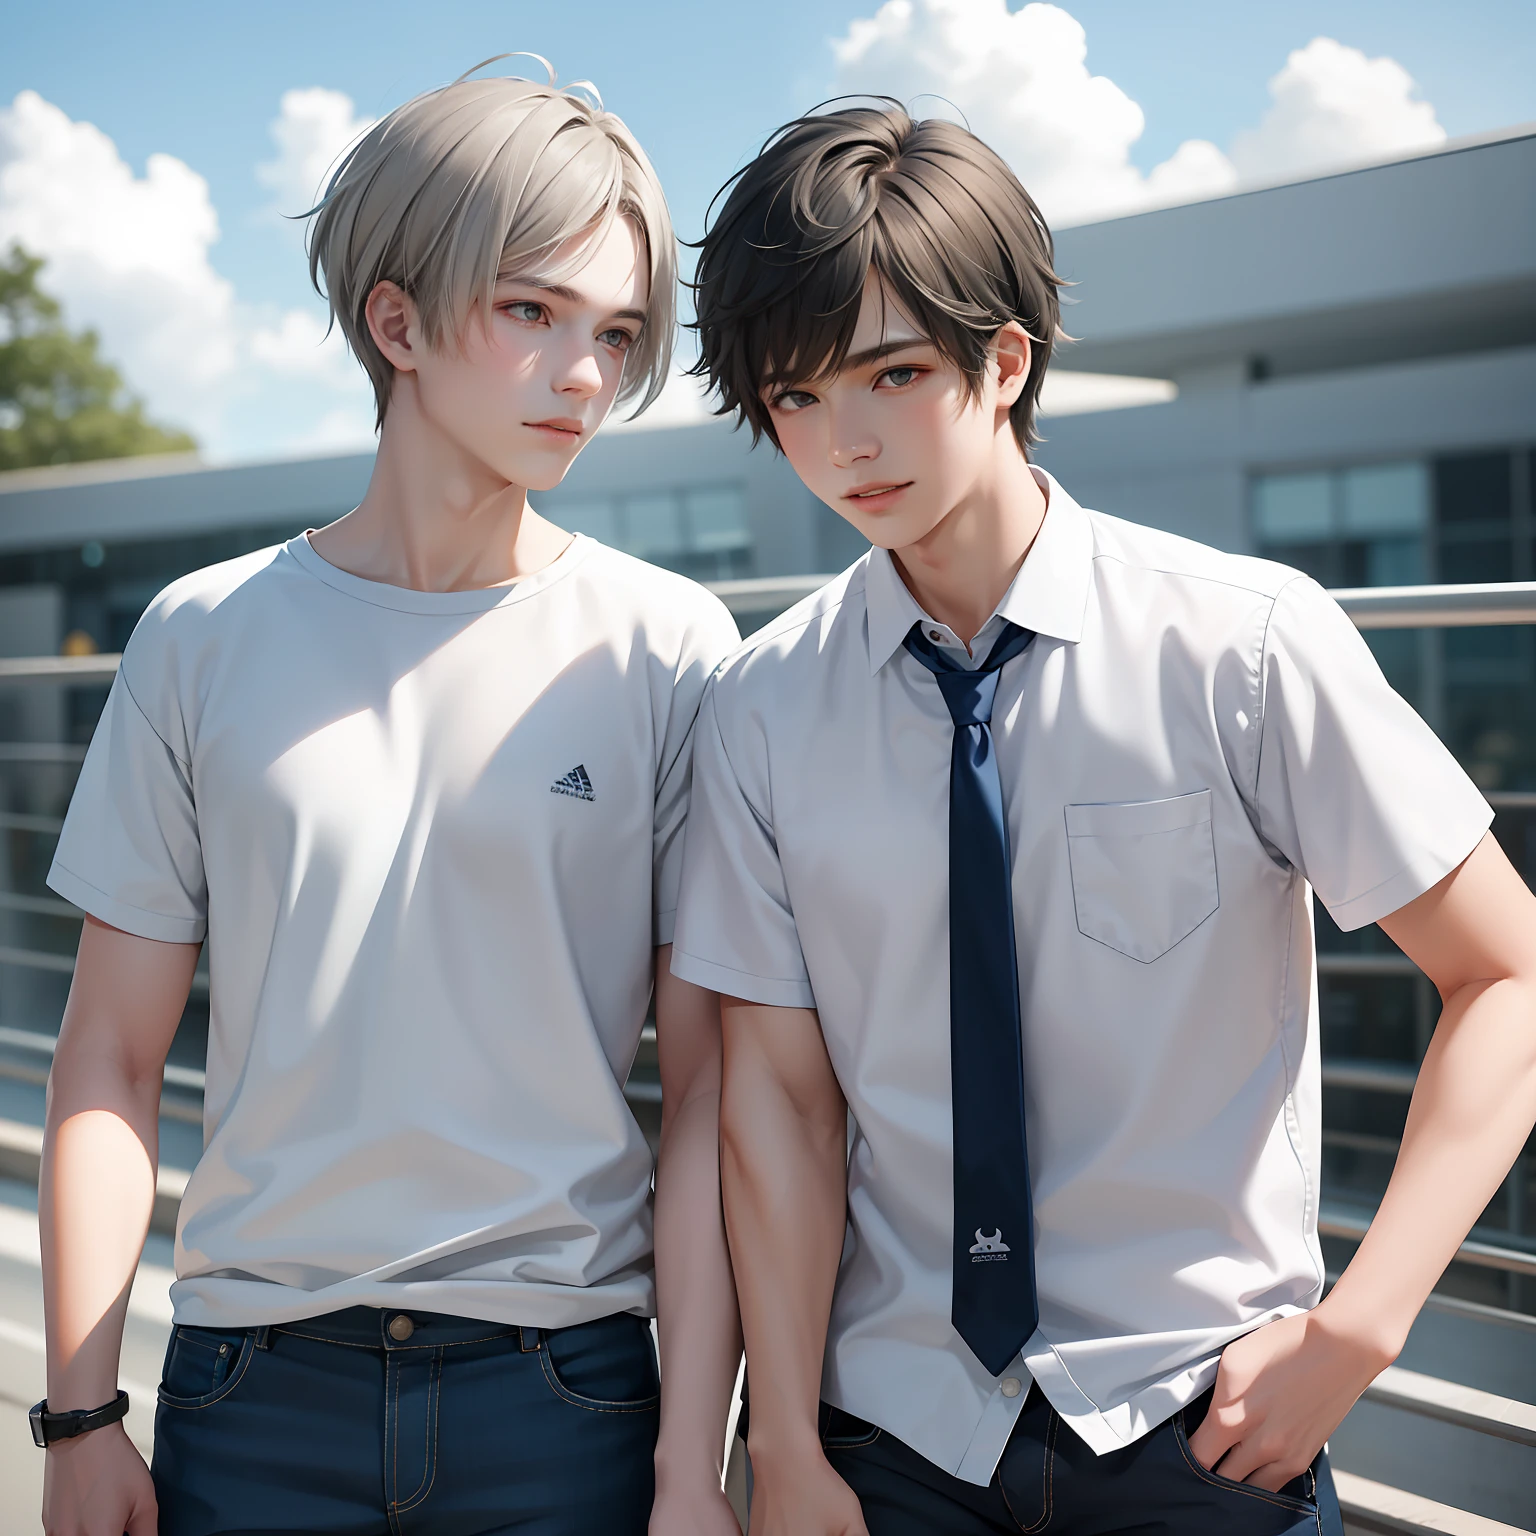 Dois amigos adolescentes de 15 anos, pele morena e cabelos grisalhos claros como as nuvens da escola, compartilham o segredo de que são amigos quase como irmãos.